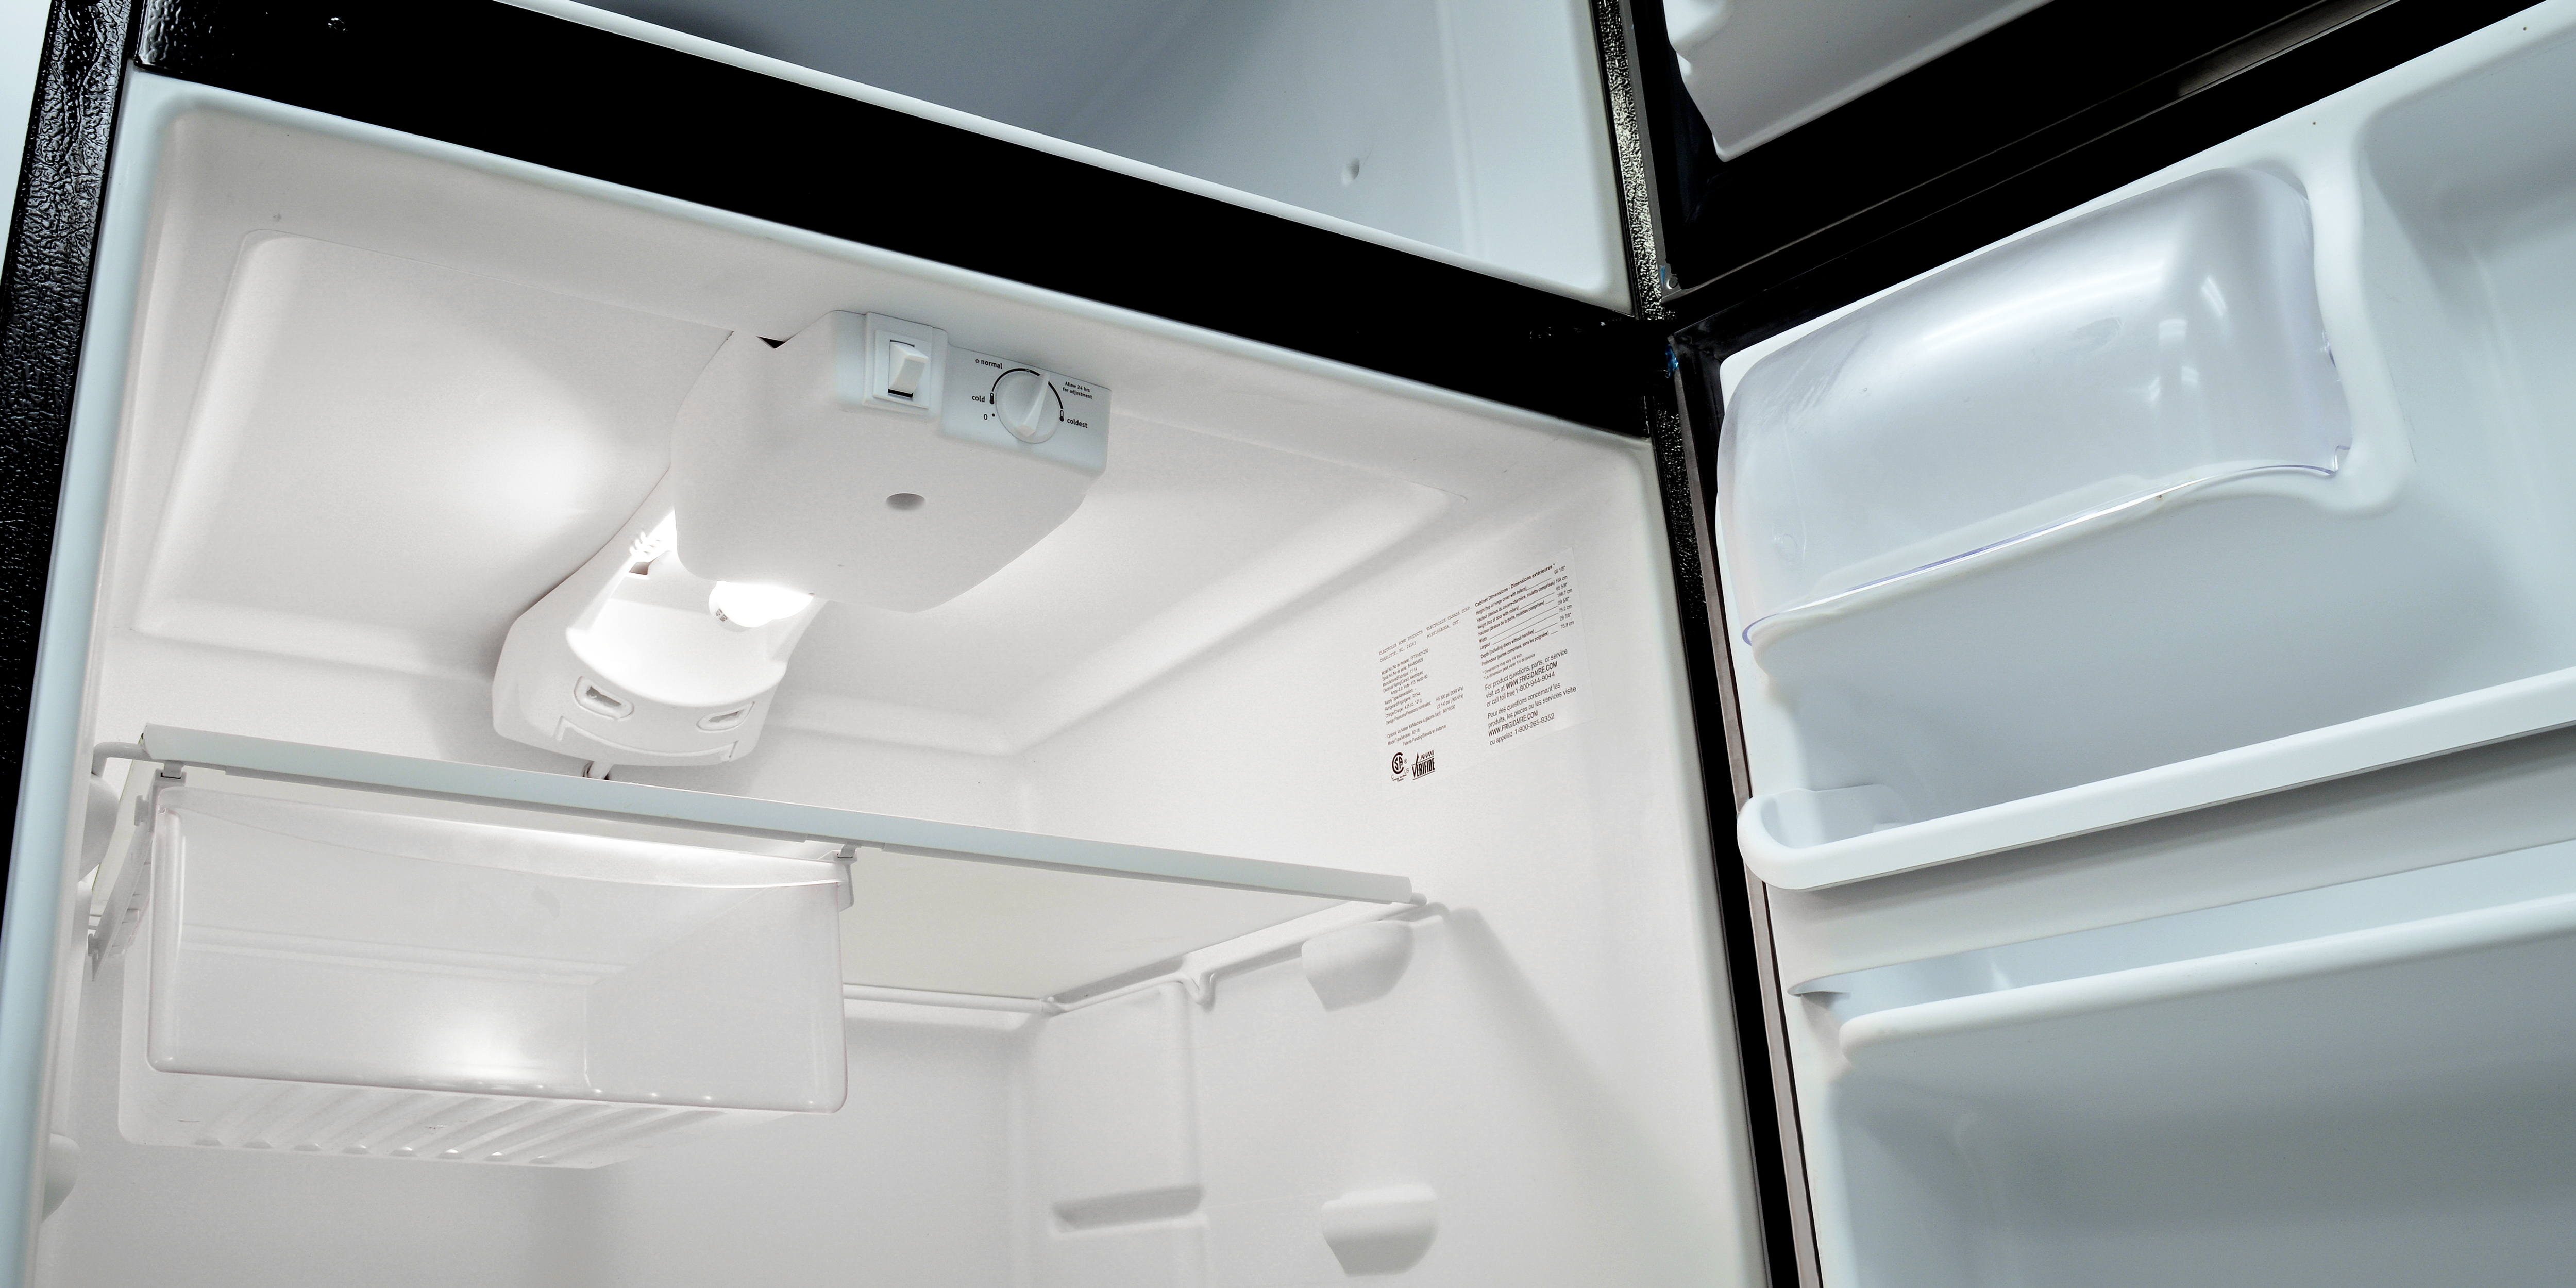 Холодильник Атлант 4721-101 размораживаем морозильное отделение